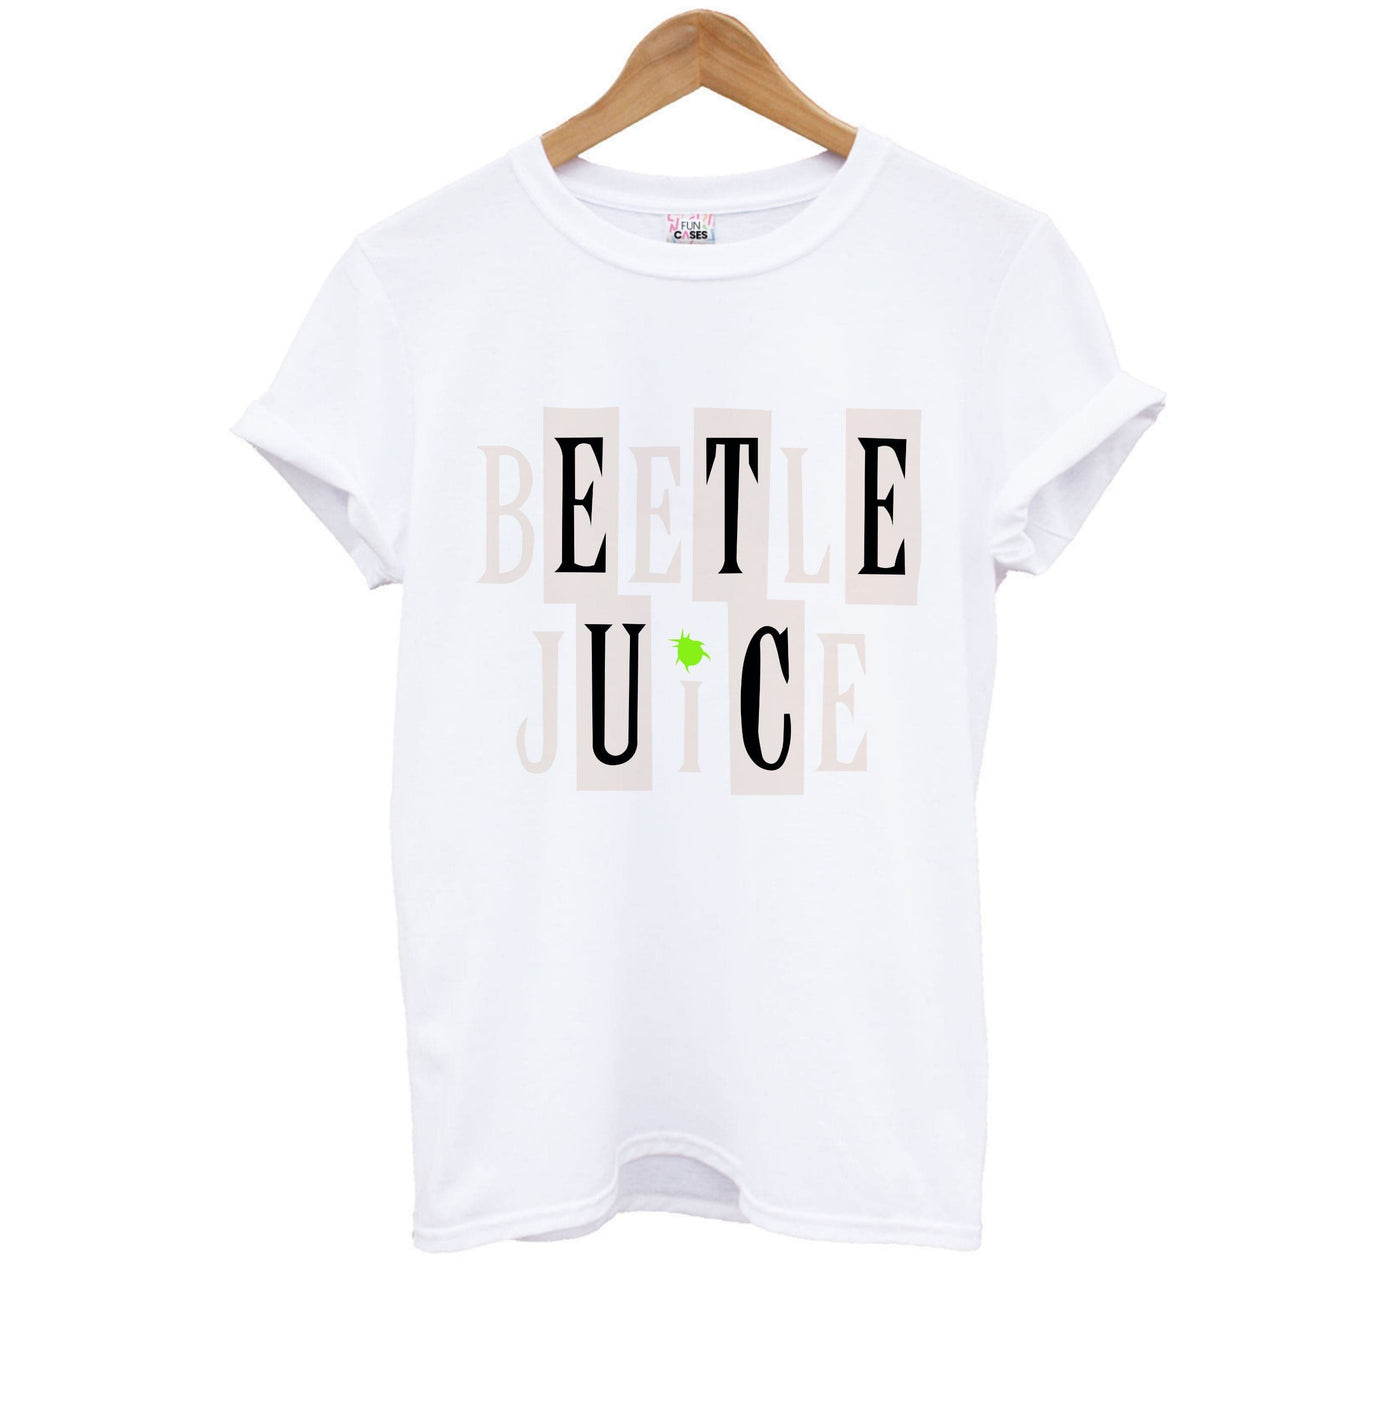 Text - Beetlejuice Kids T-Shirt